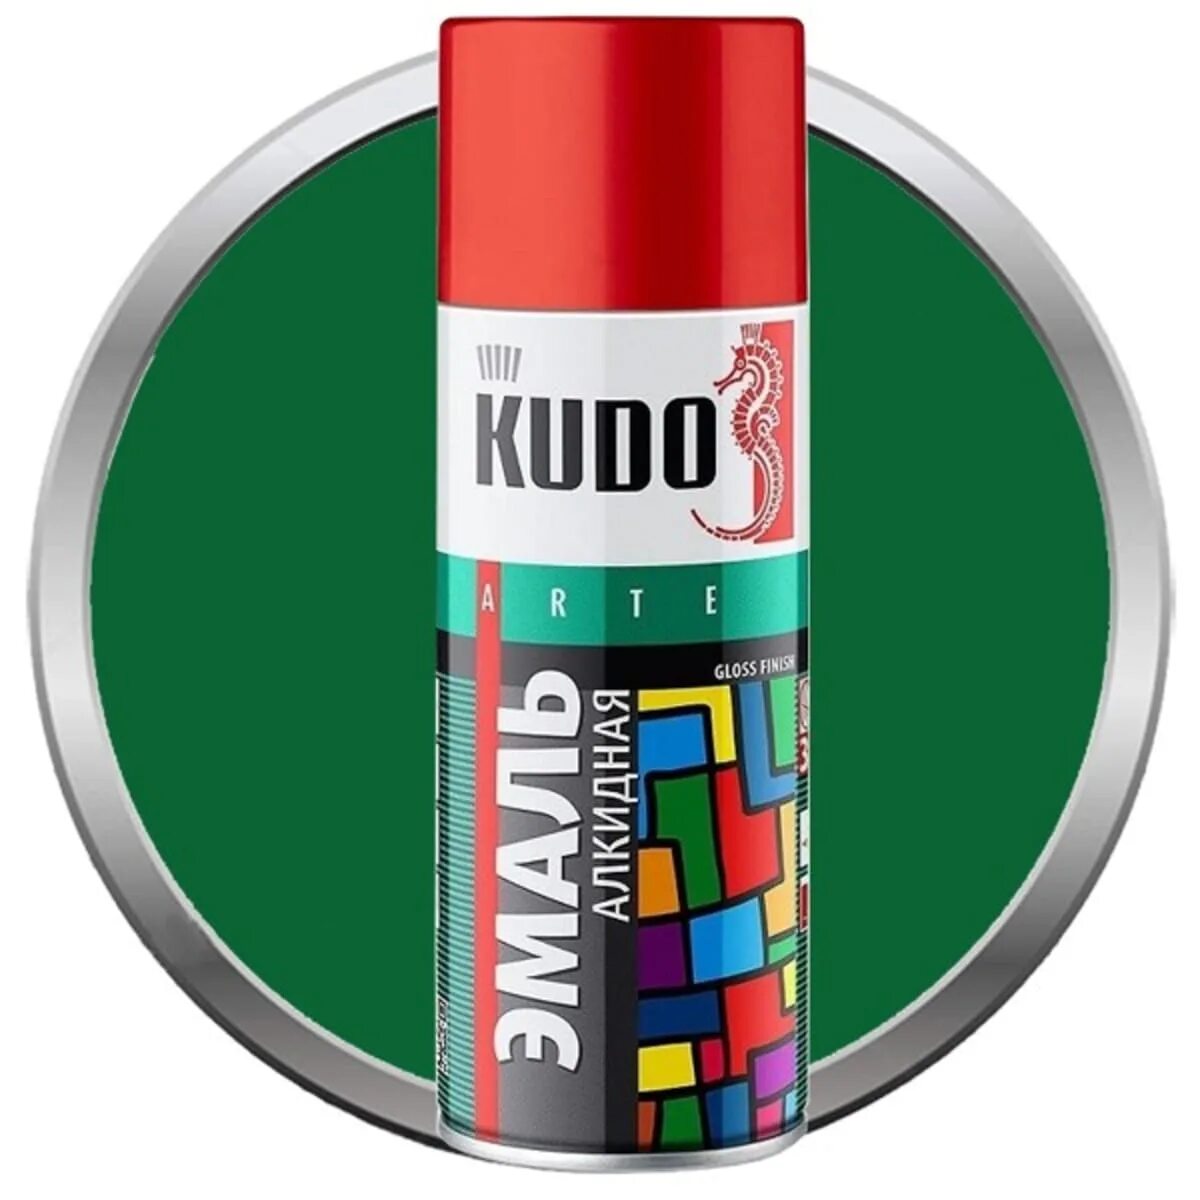 Kudo эмаль черная матовая. Краска Kudo ku-1007. Эмаль ku-1102 Kudo черная матовая. Эмаль универсальная (черная глянцевая) Kudo 520мл. Эмаль аэрозольная универсальная черная матовая (0,52л) КУДО ku-1102.